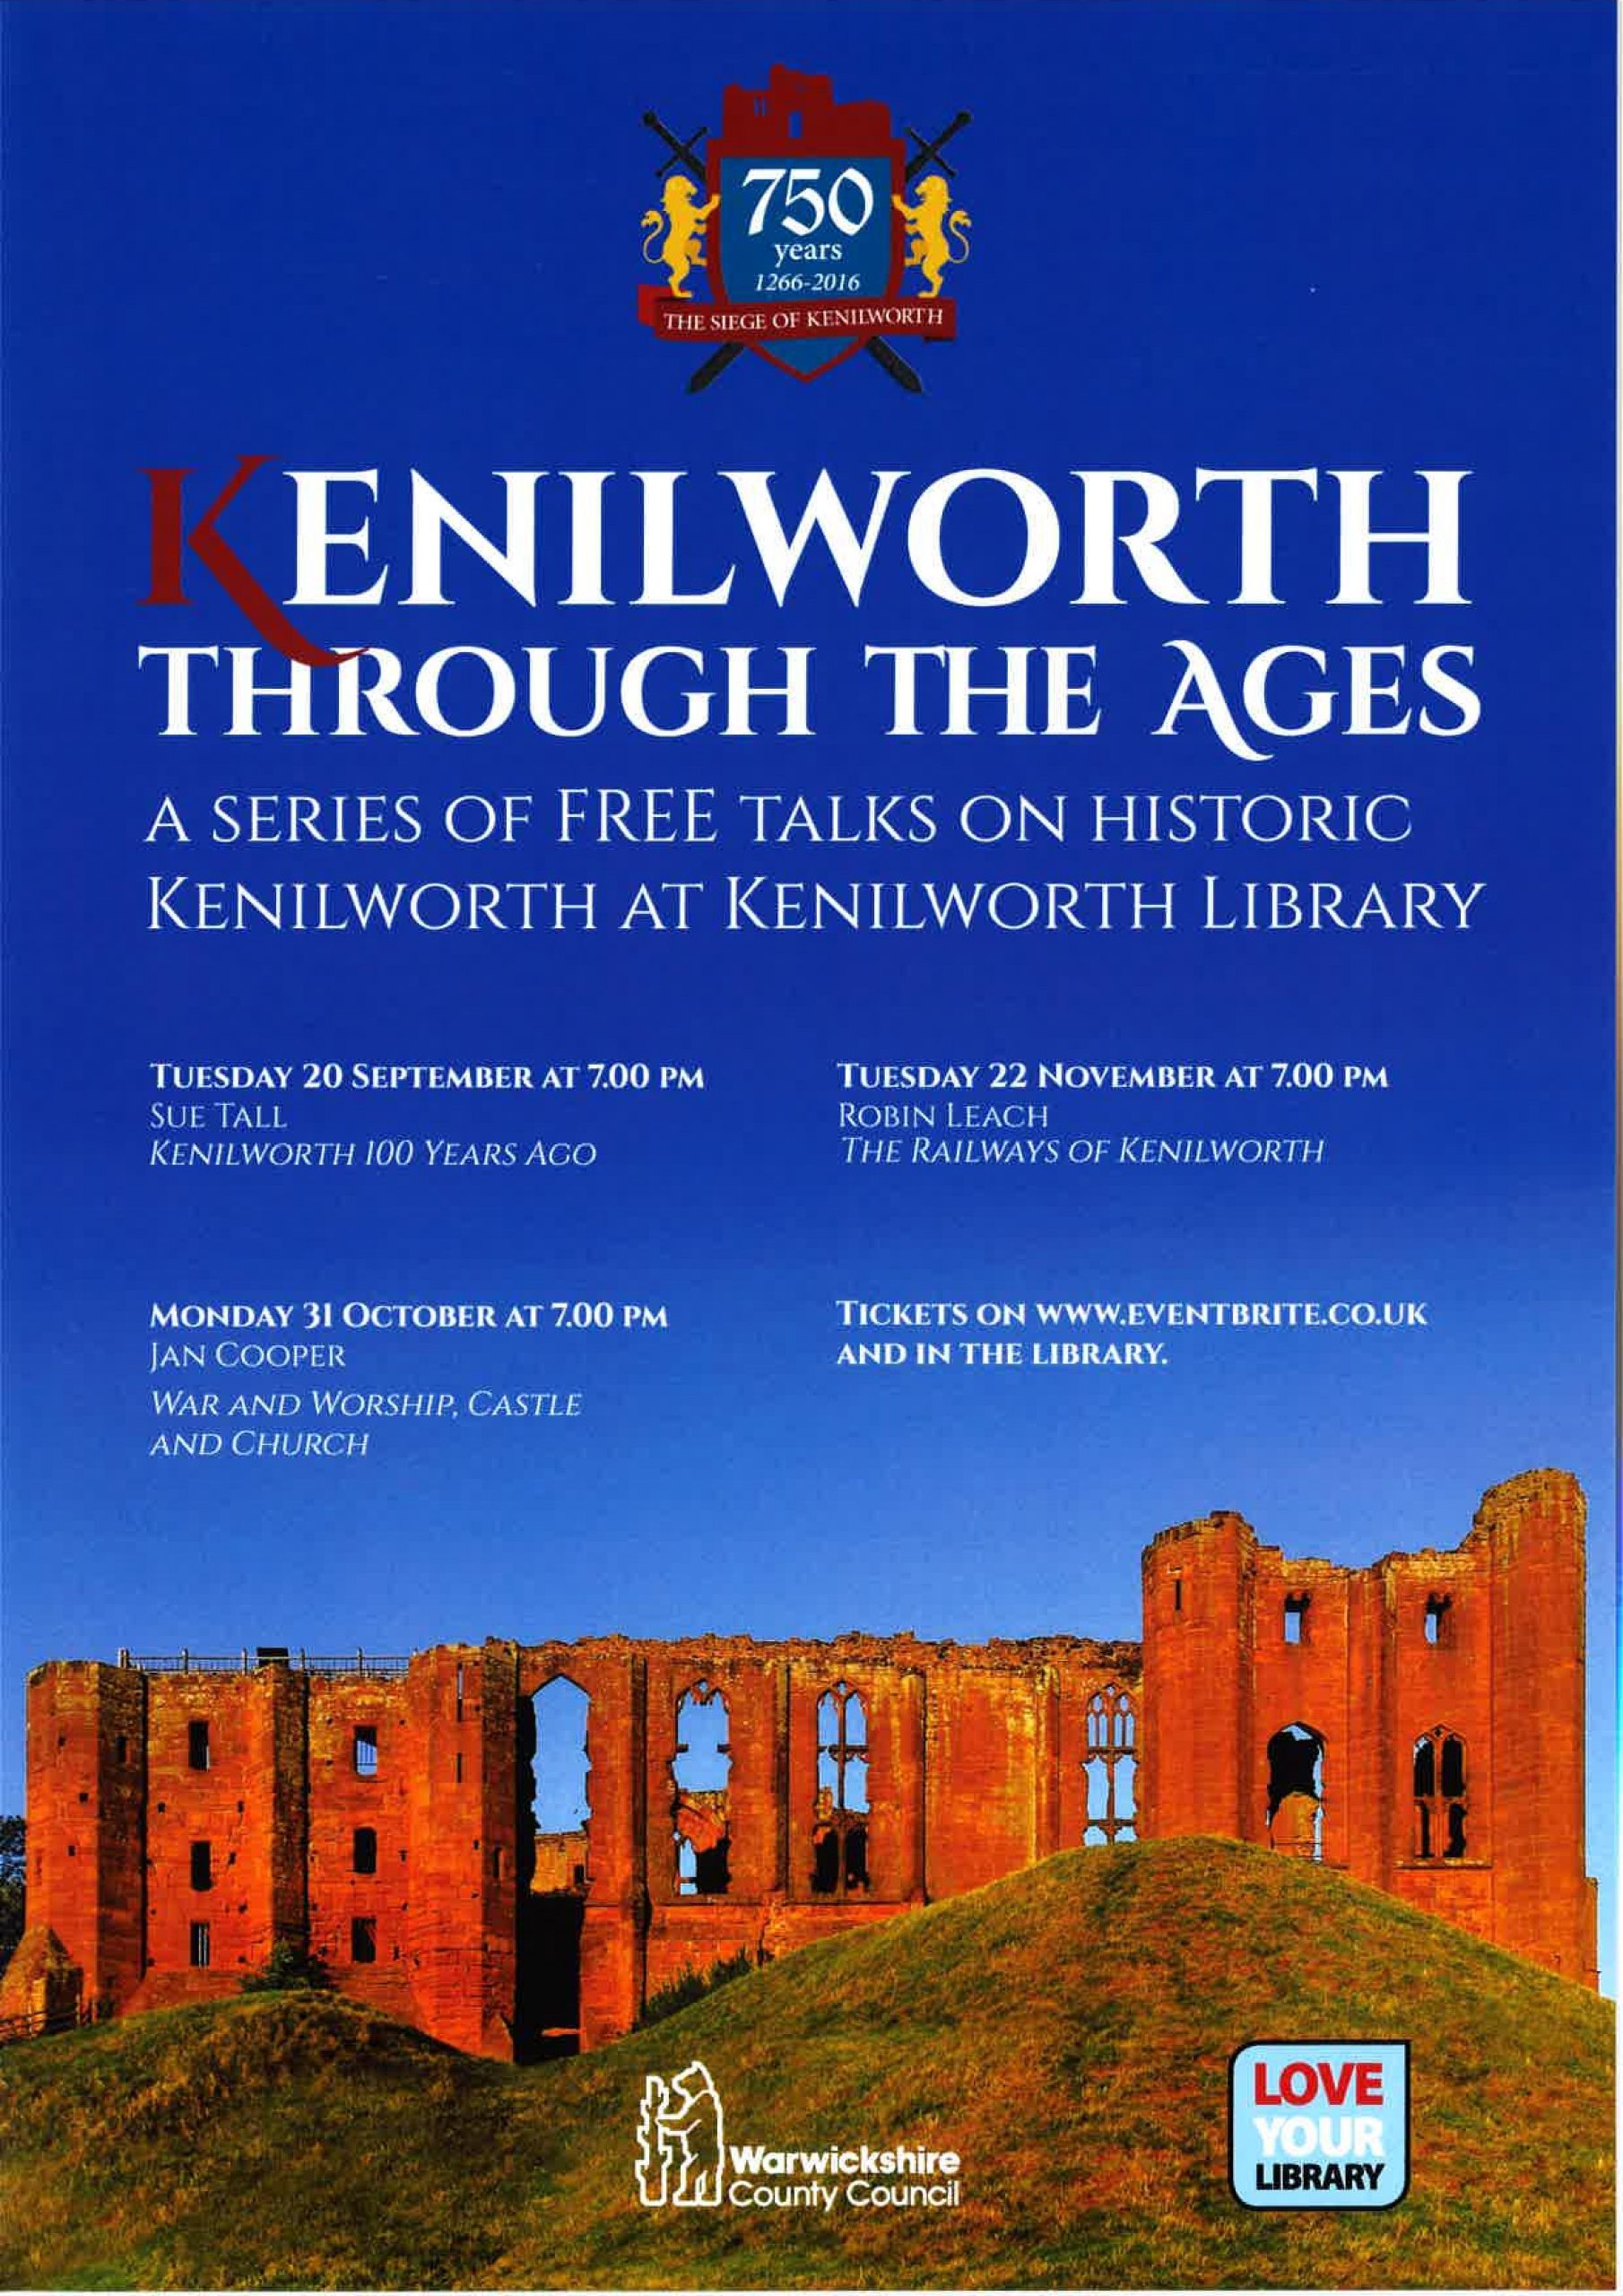 Talks at Kenilworth Library